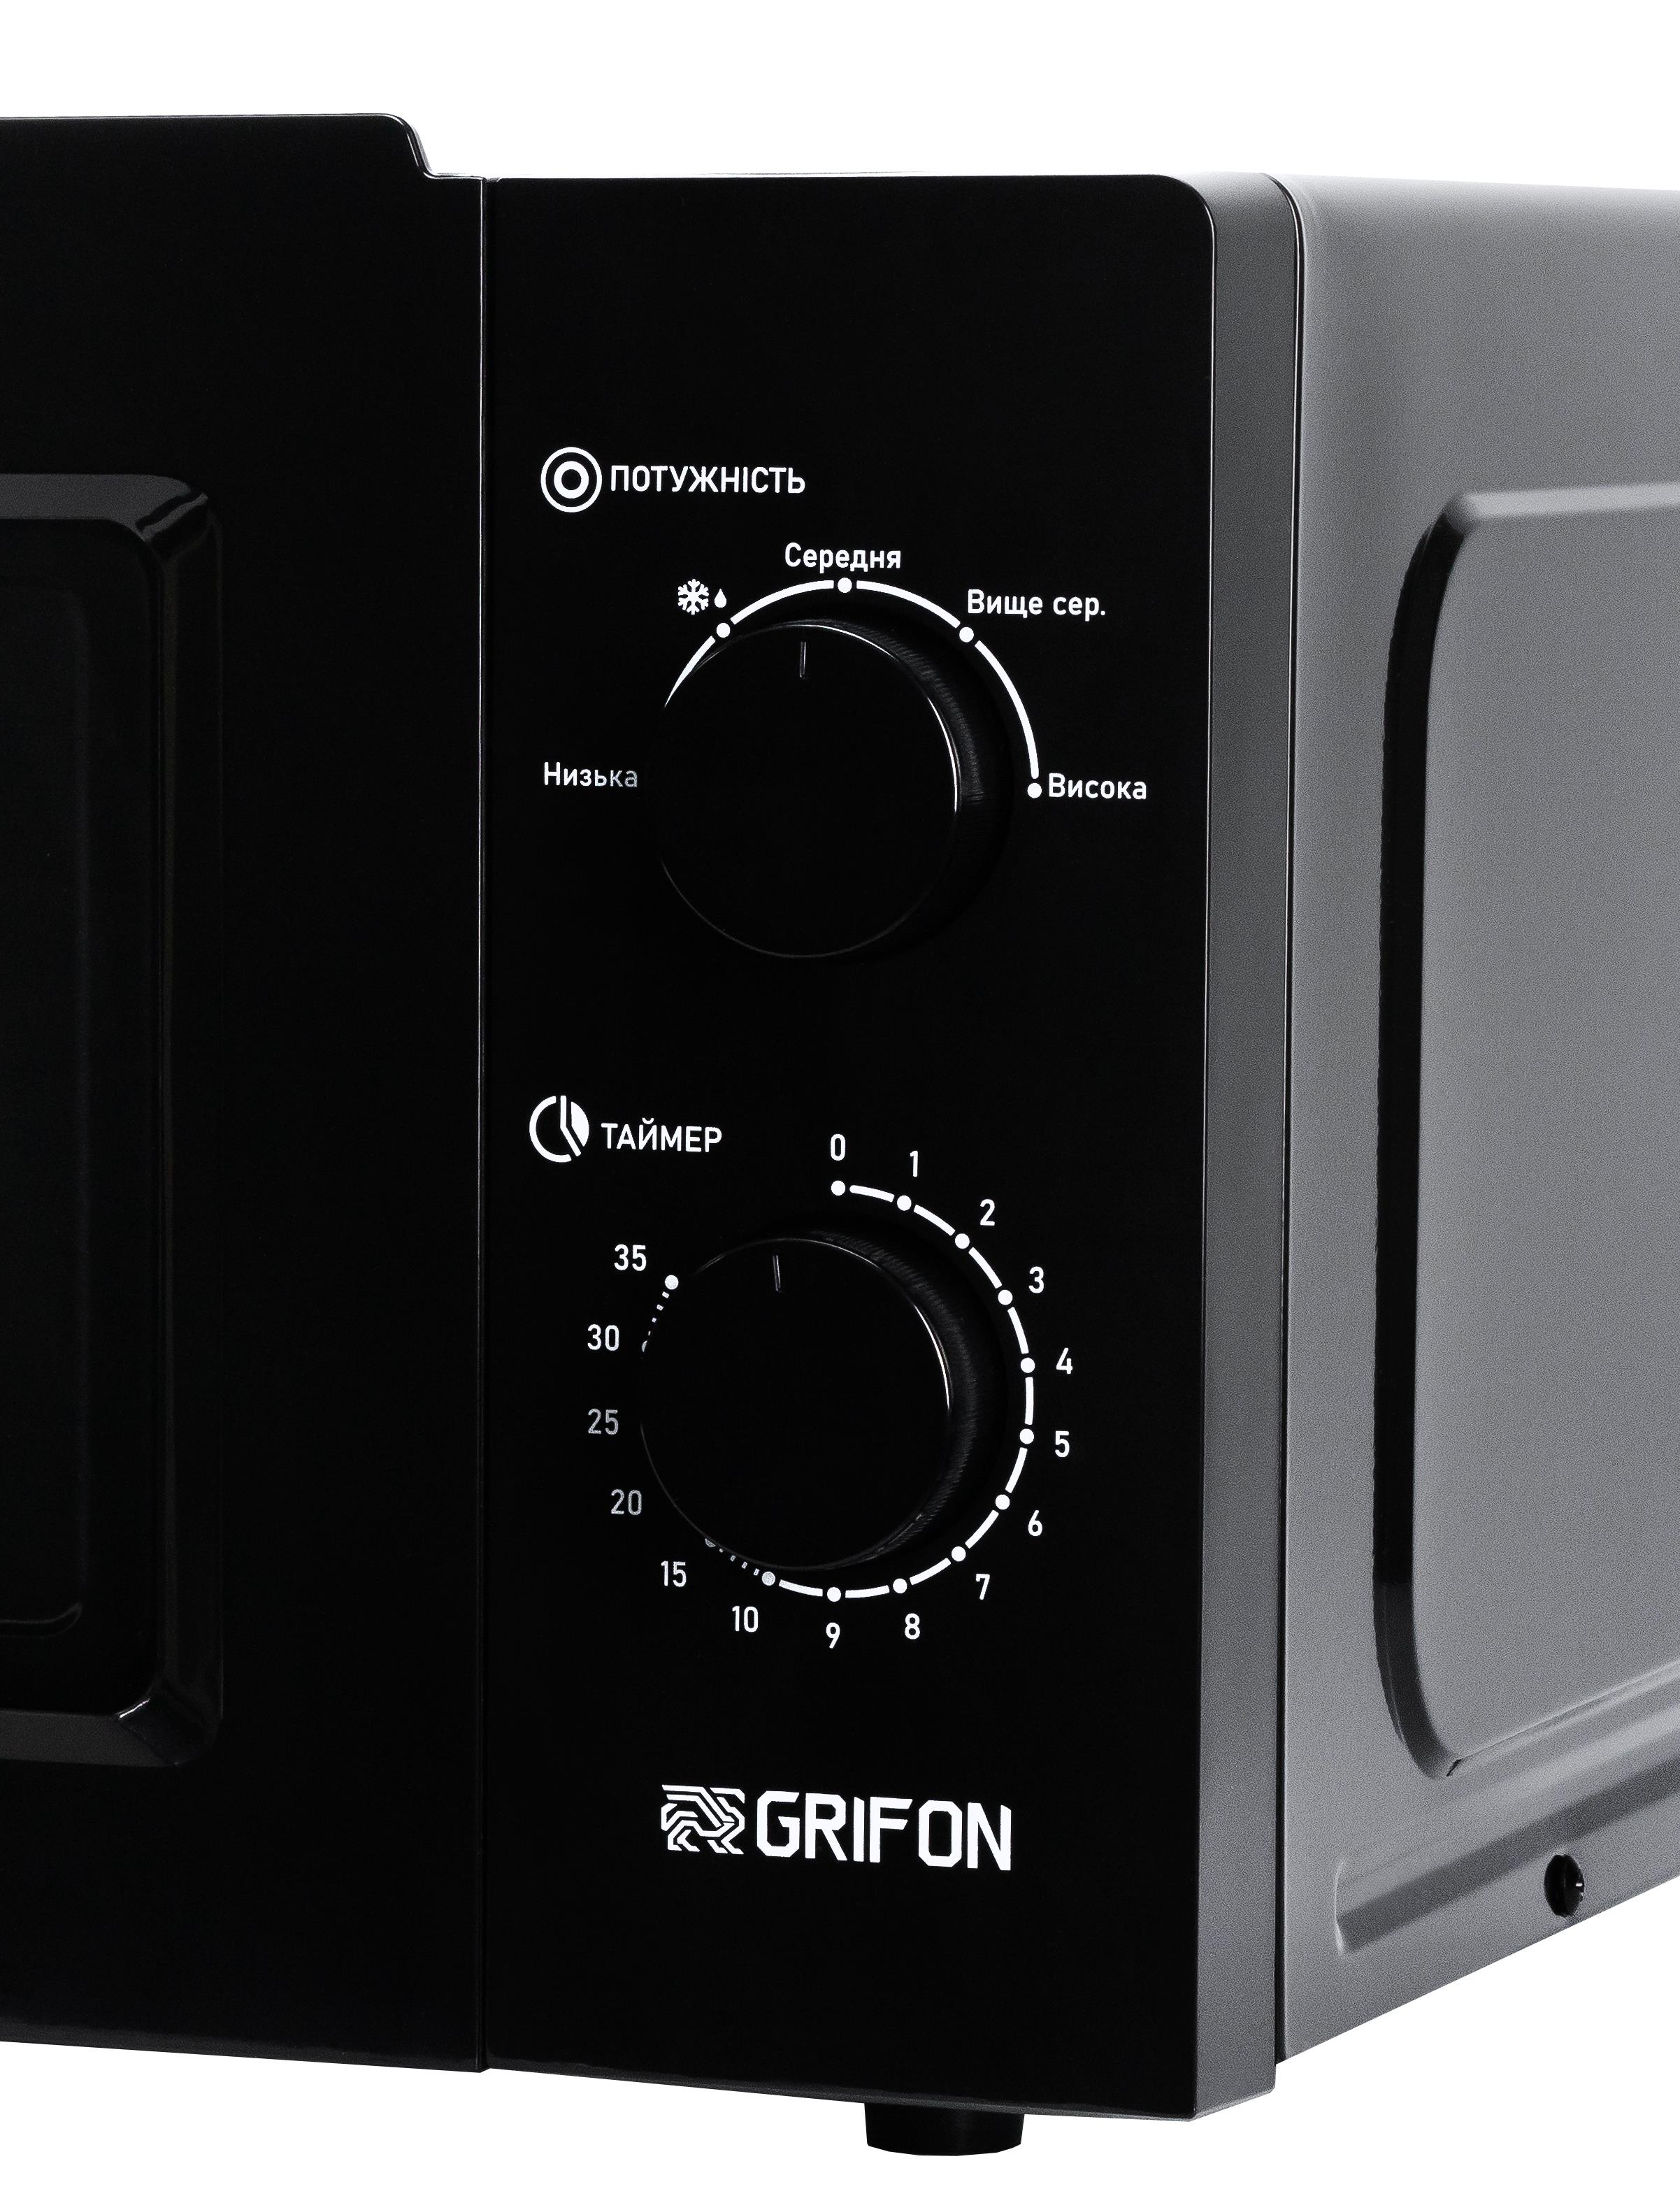 Микроволновая печь Grifon GR20FM0105B отзывы - изображения 5